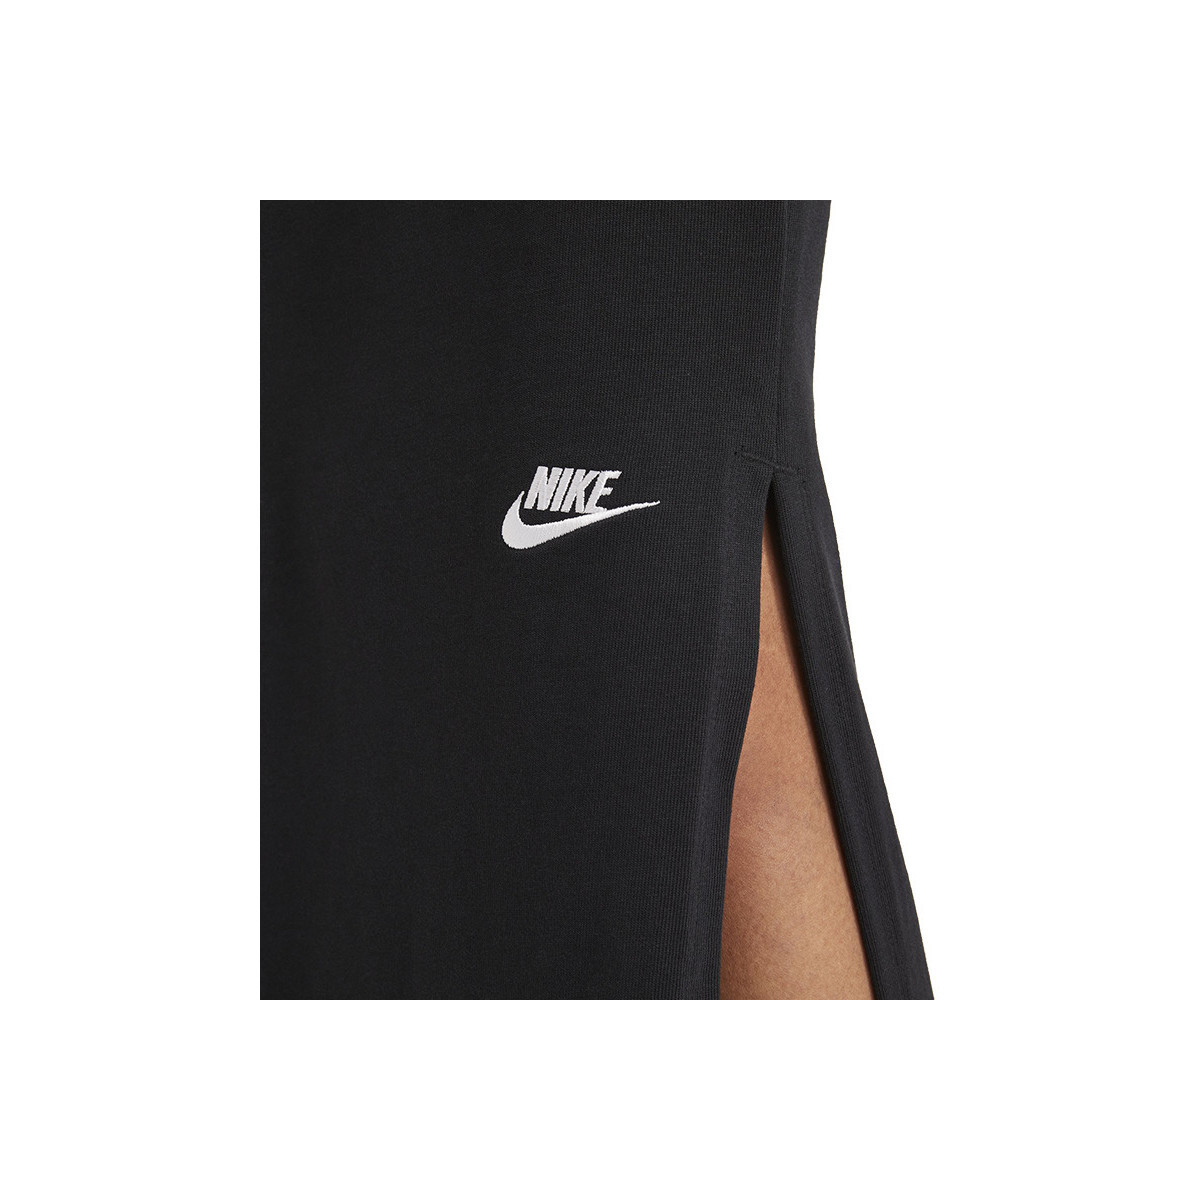 Nike Noir Jupe Longue Jersey / Noir rCJh0Yfw